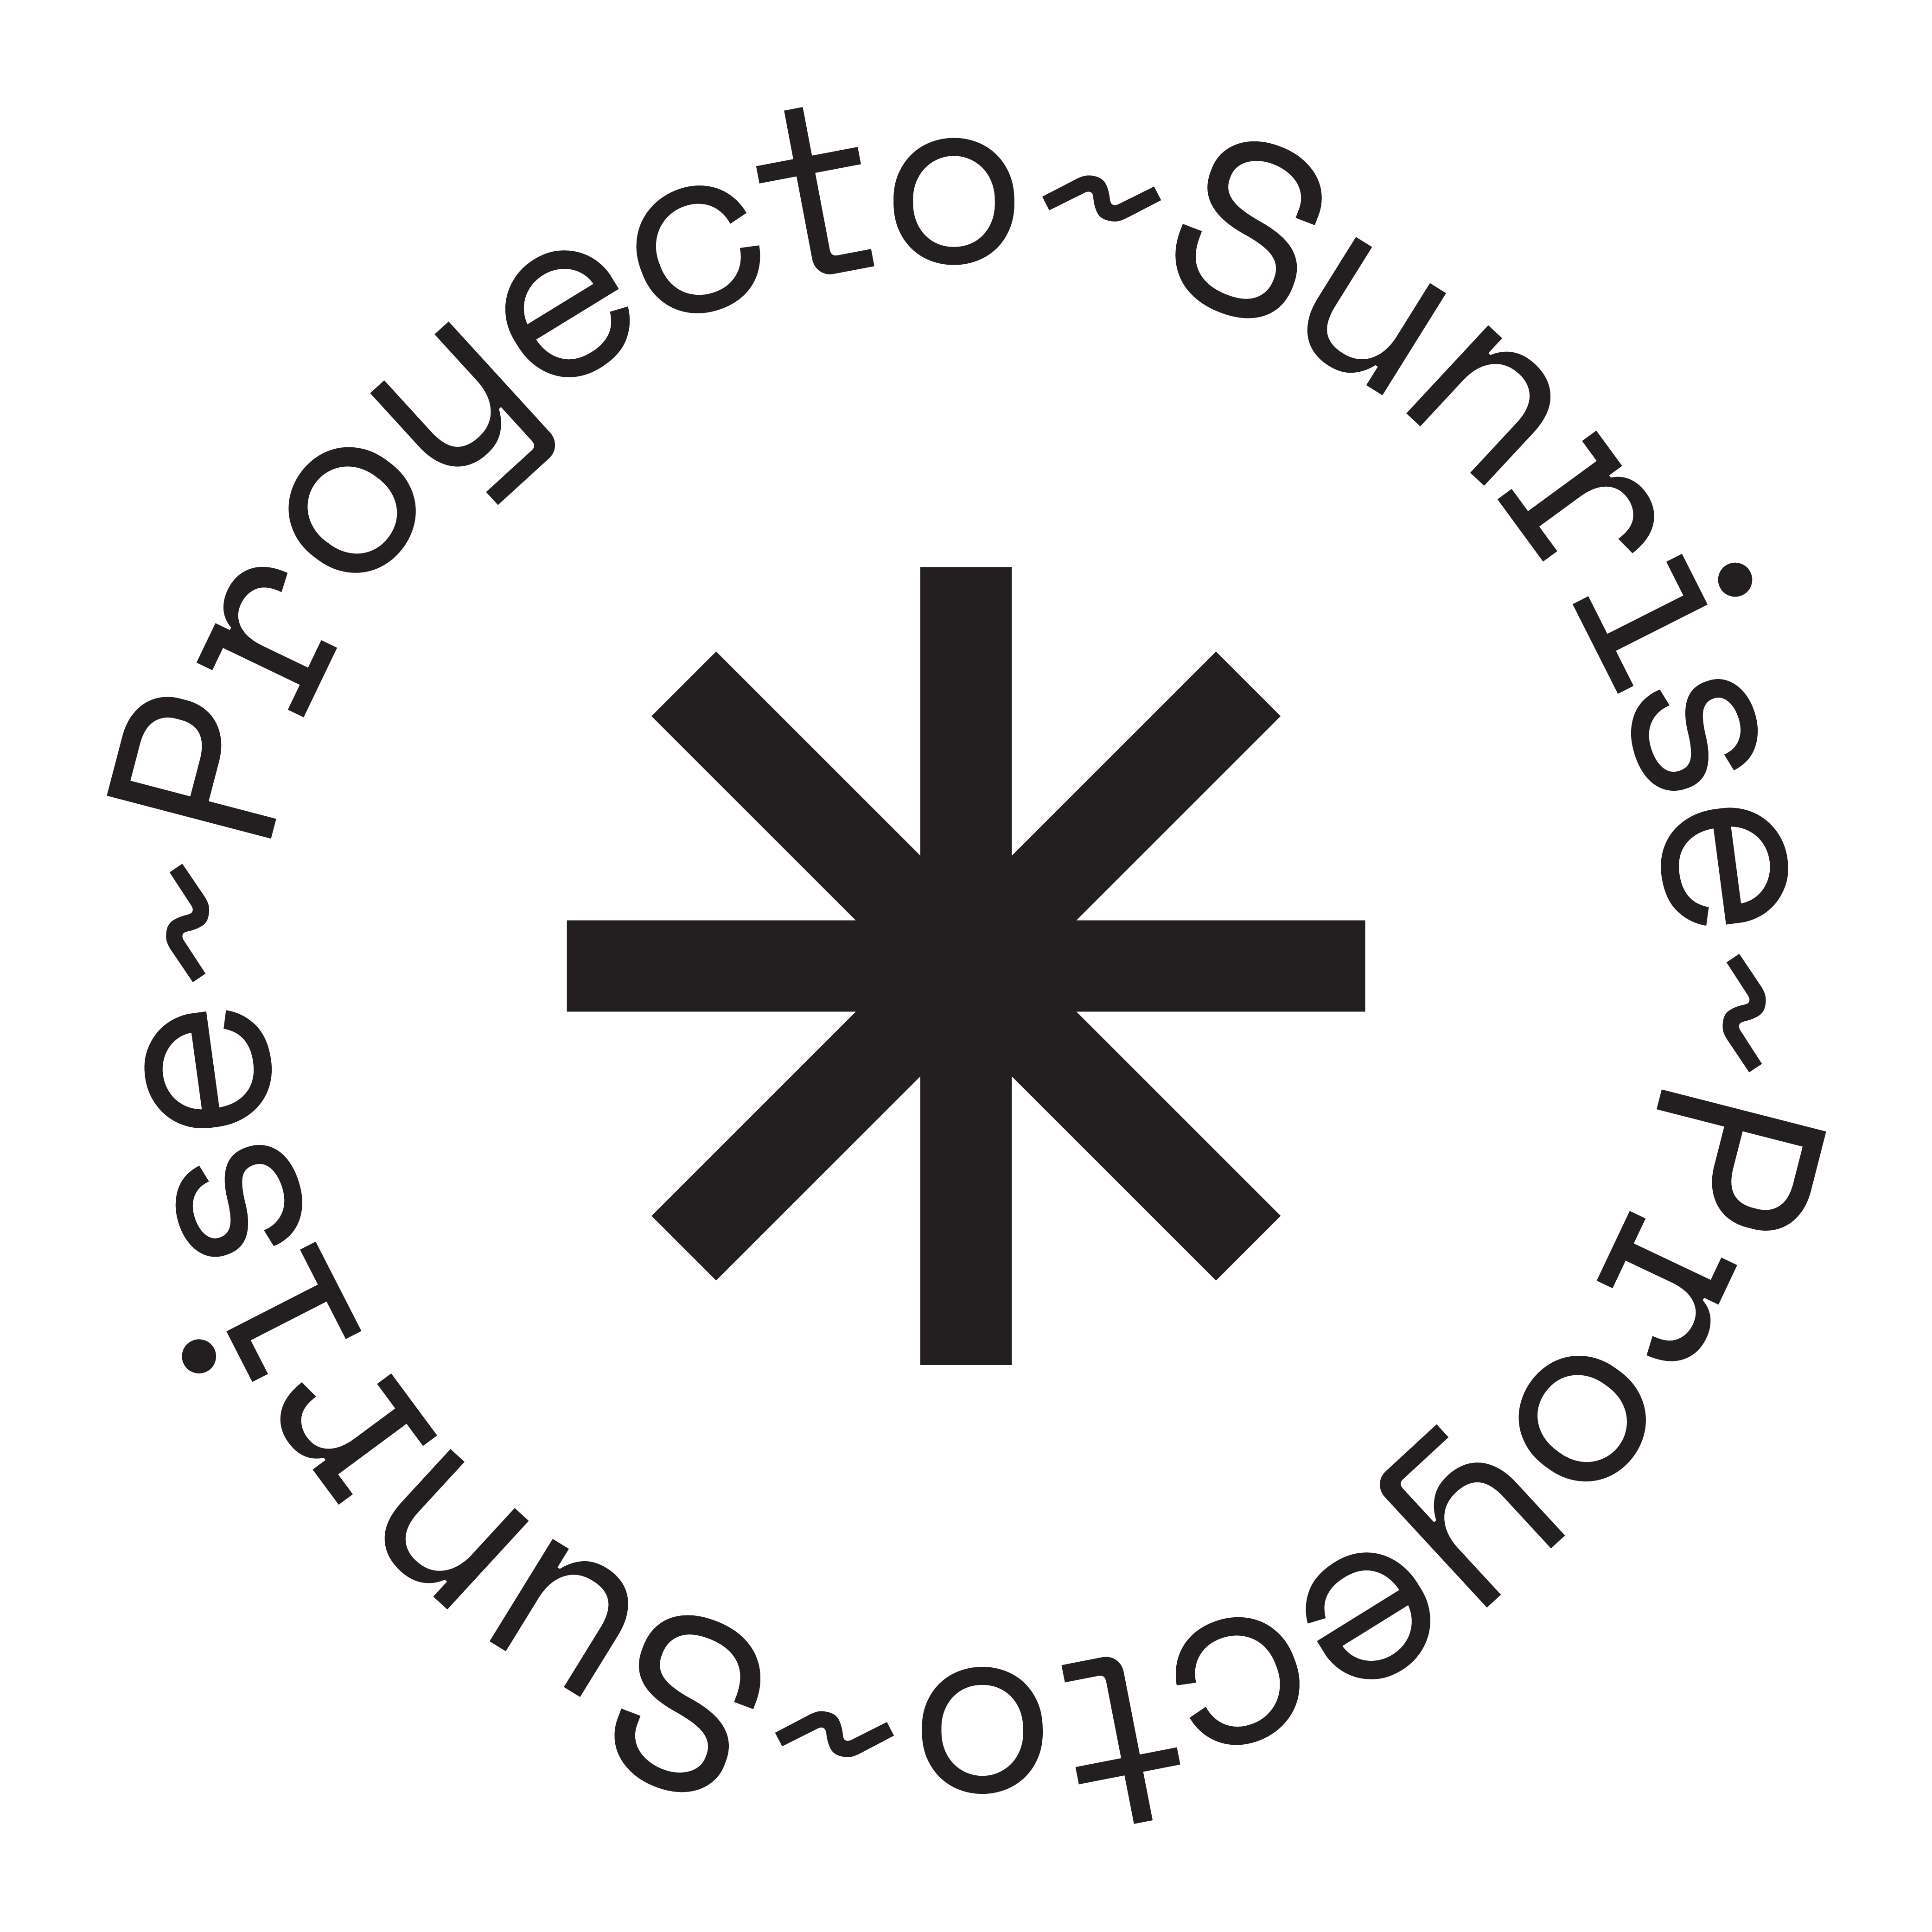 Proyecto sunrise logo black